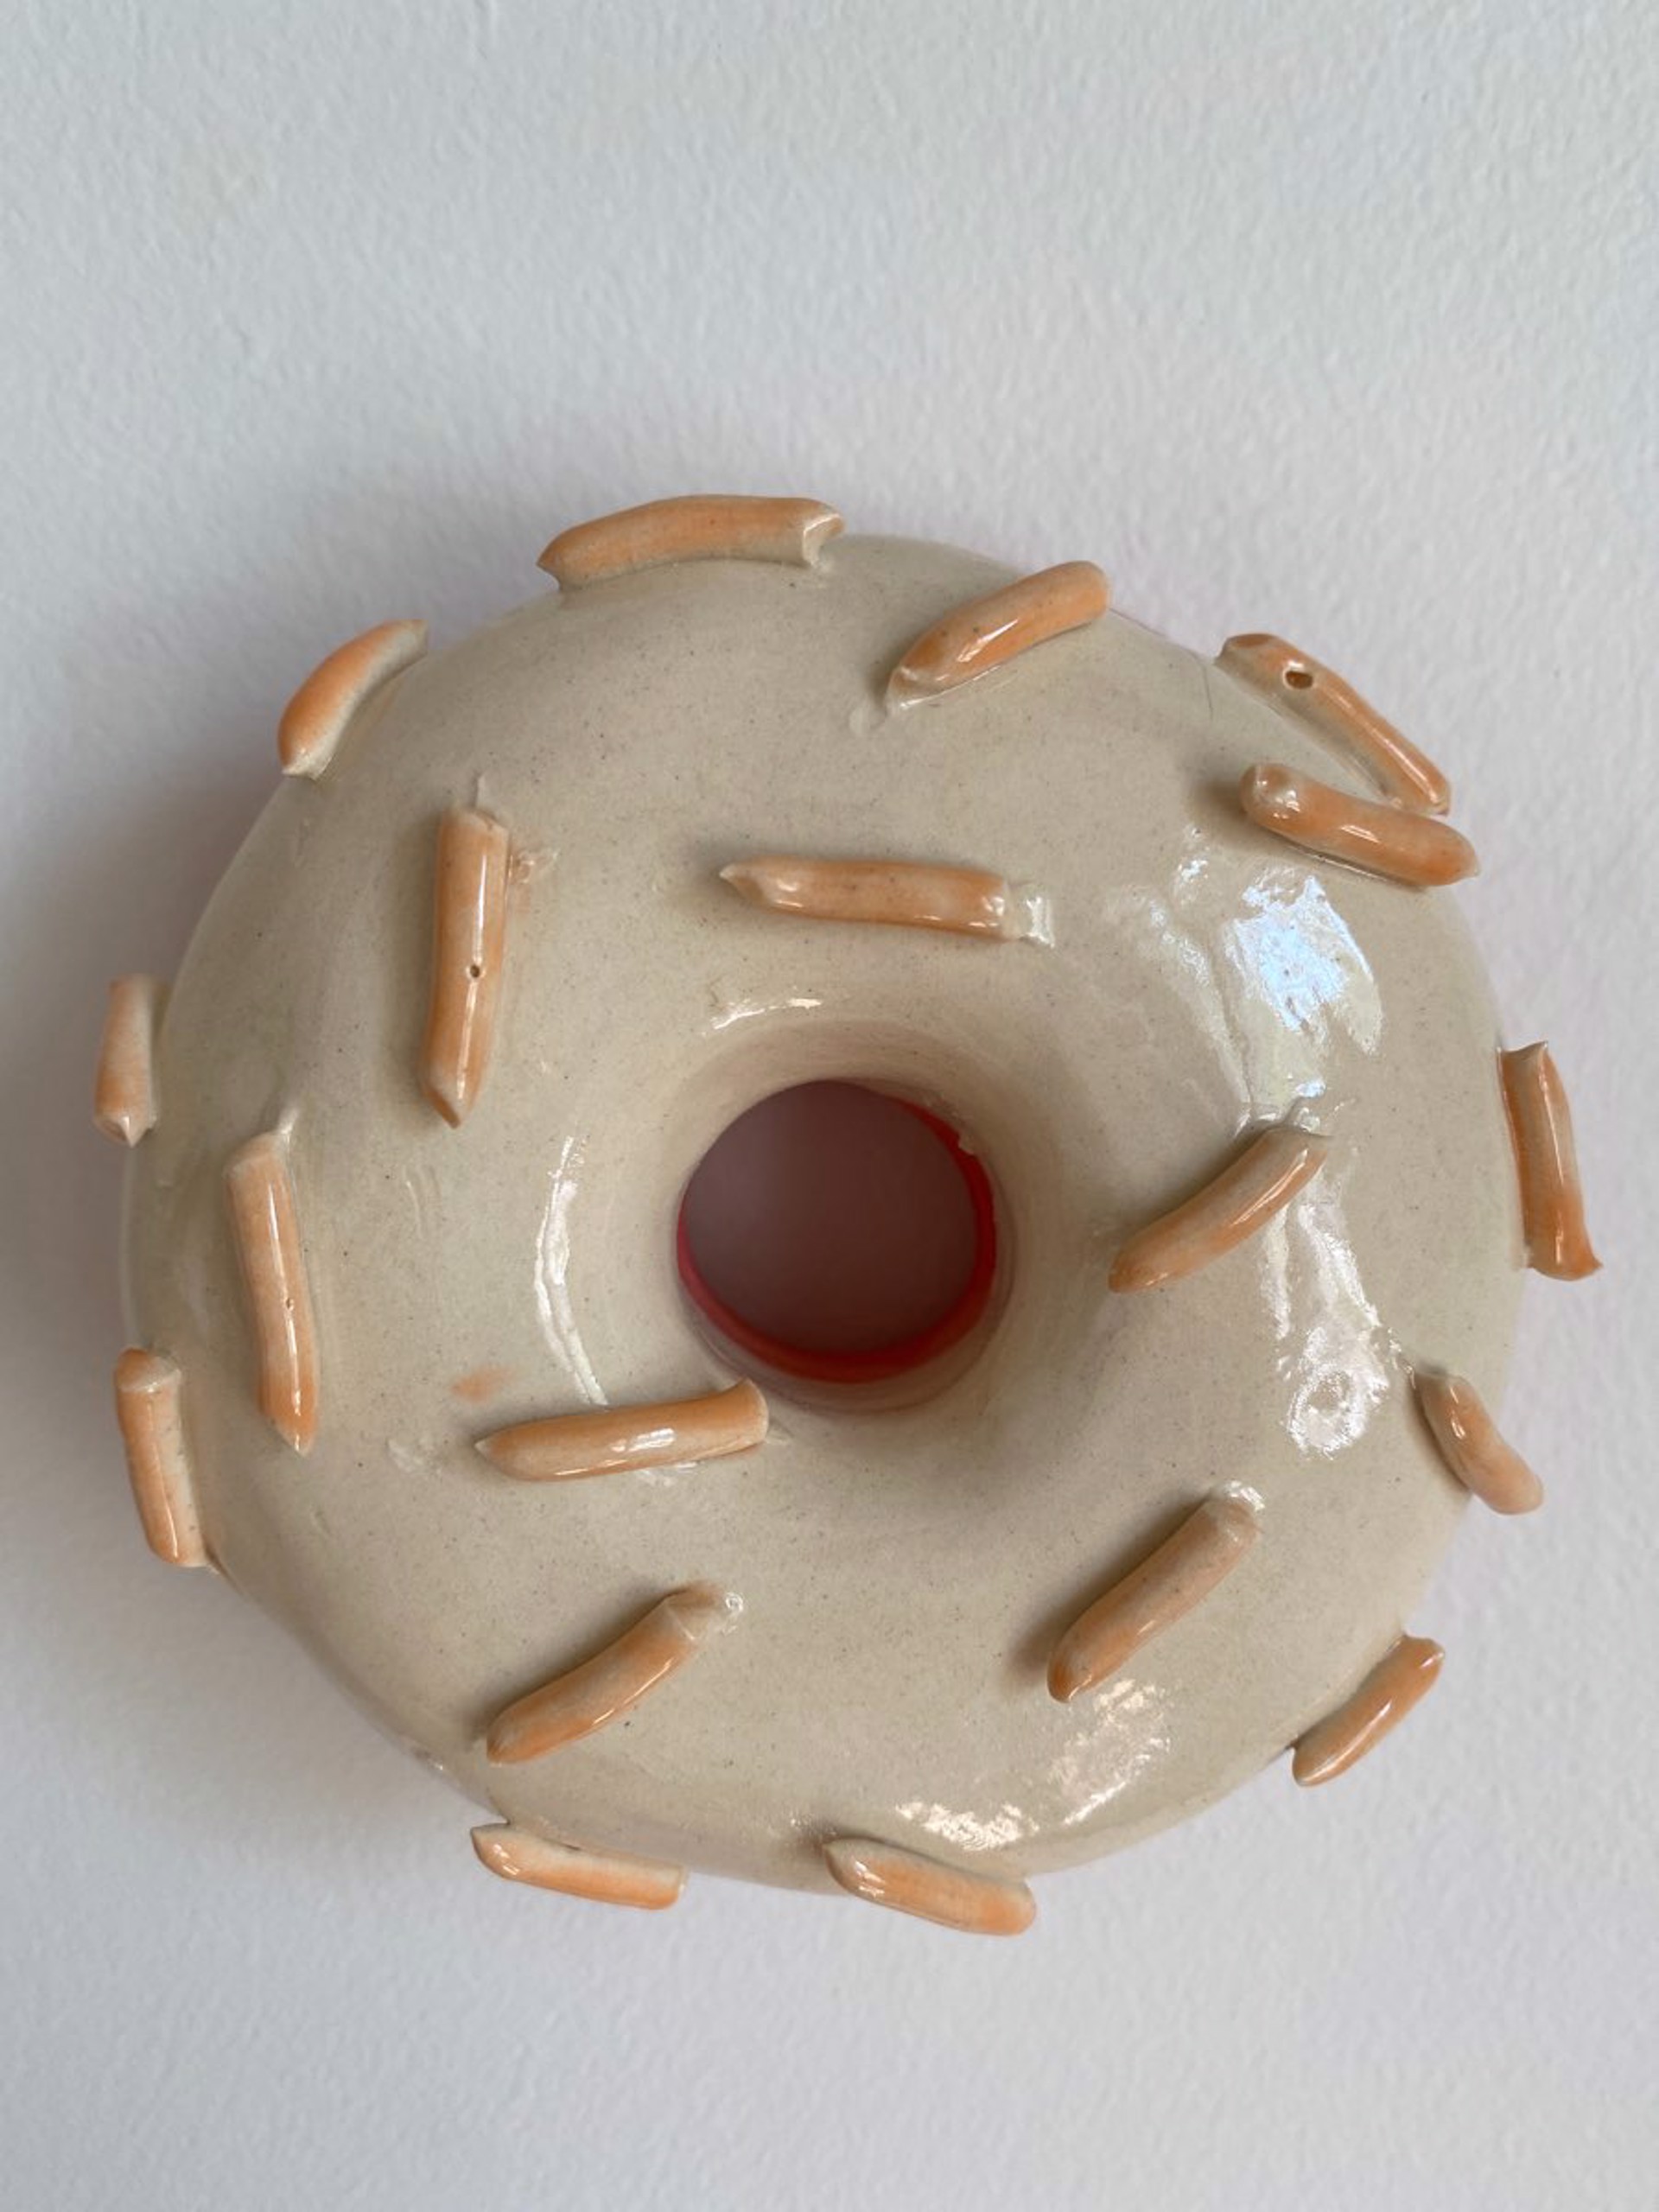 Vanilla Donut With Peach Sprinkles by Liv Antonecchia